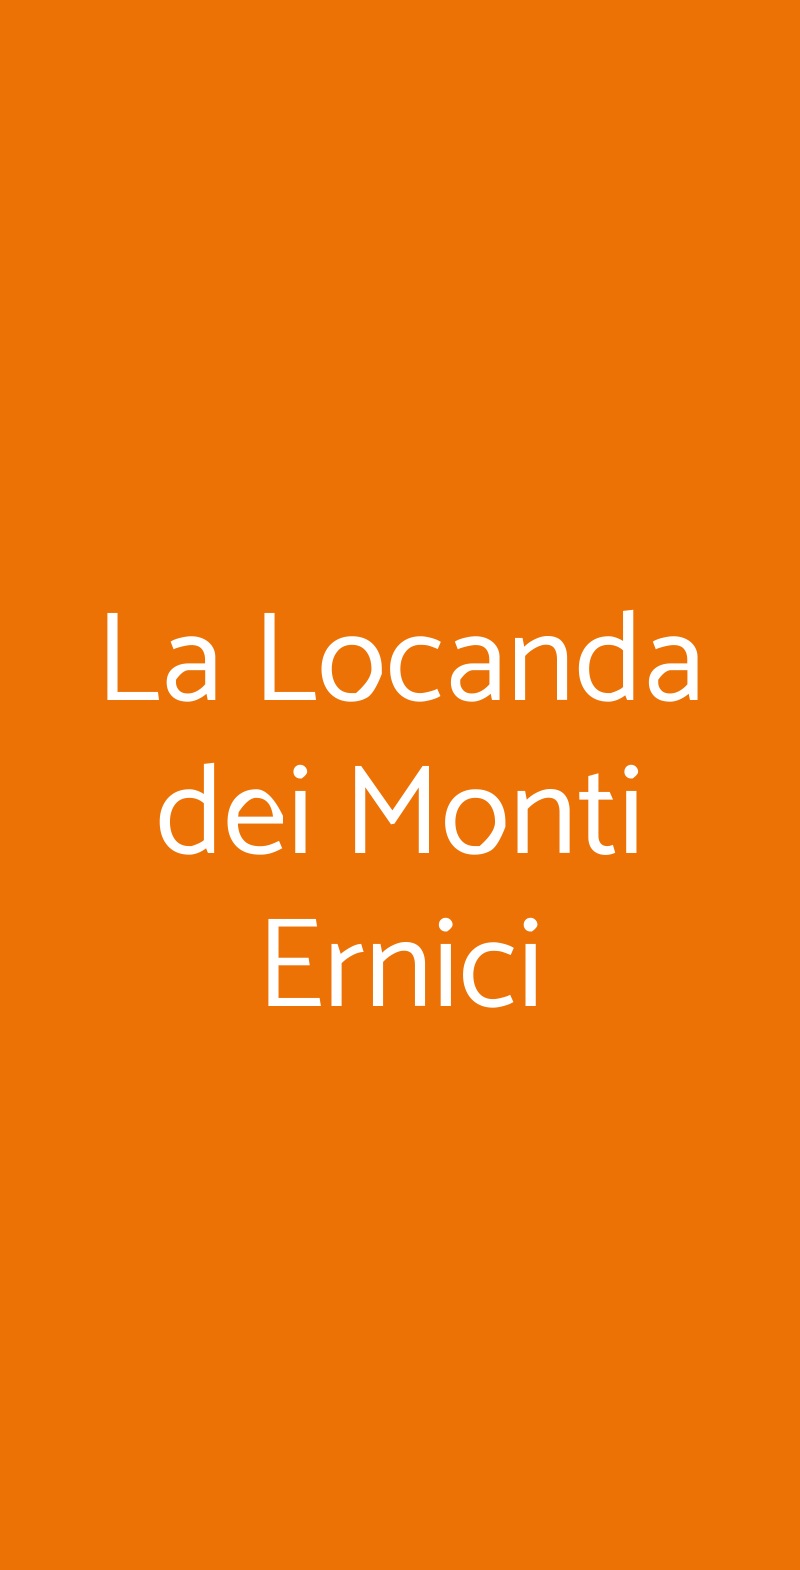 La Locanda dei Monti Ernici Vico Nel Lazio menù 1 pagina